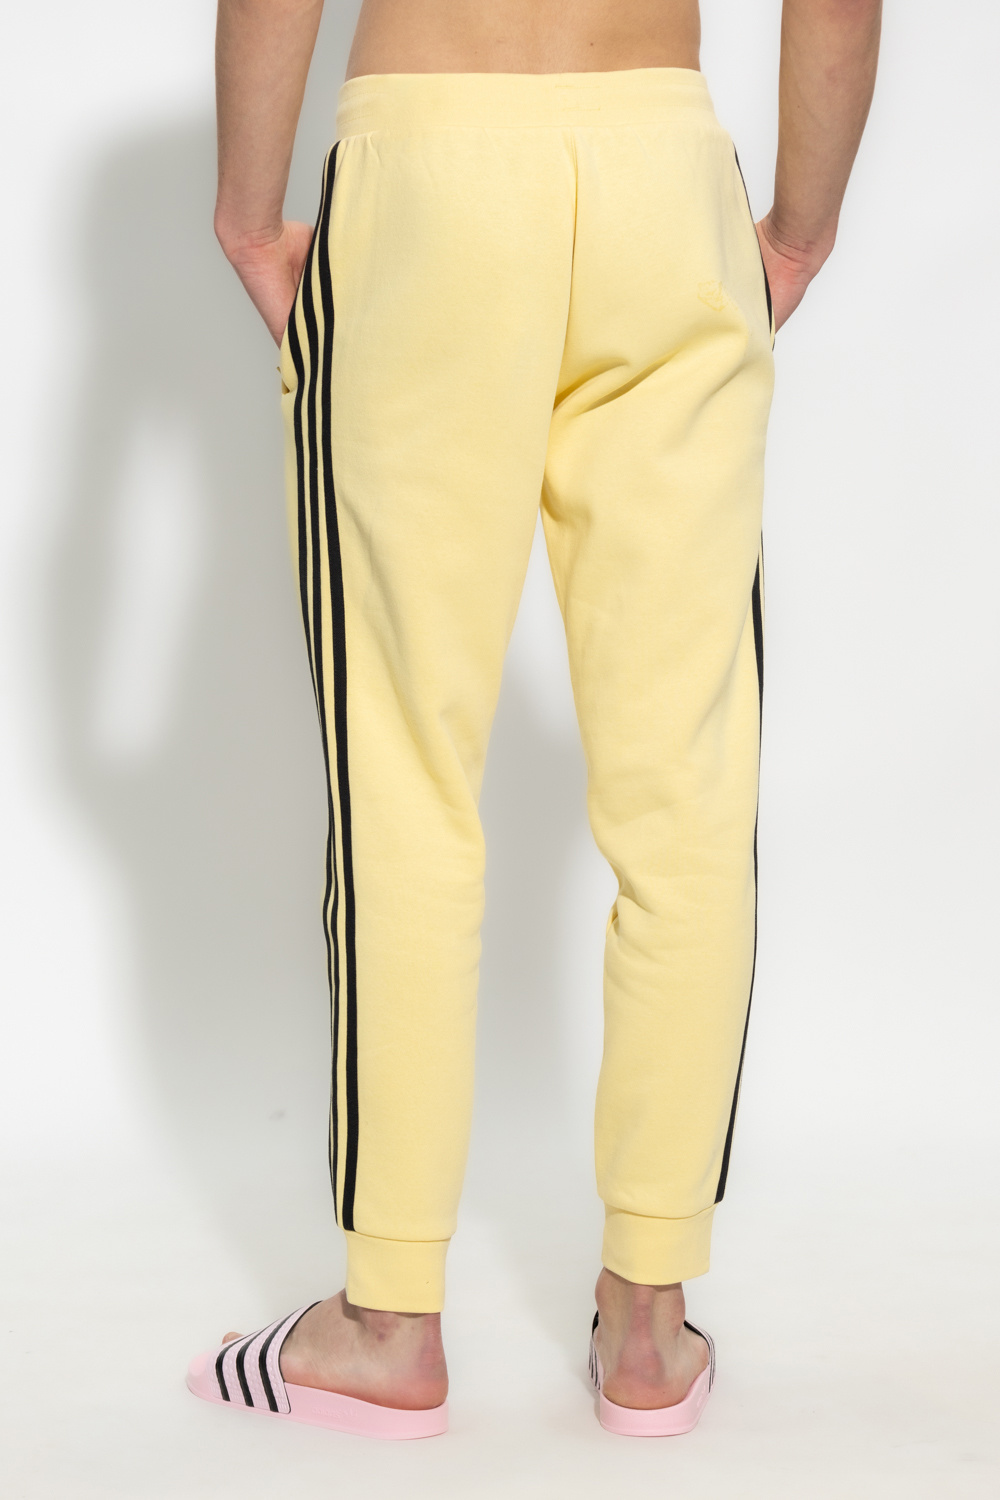 adidas emx21 Originals Trousers with logo